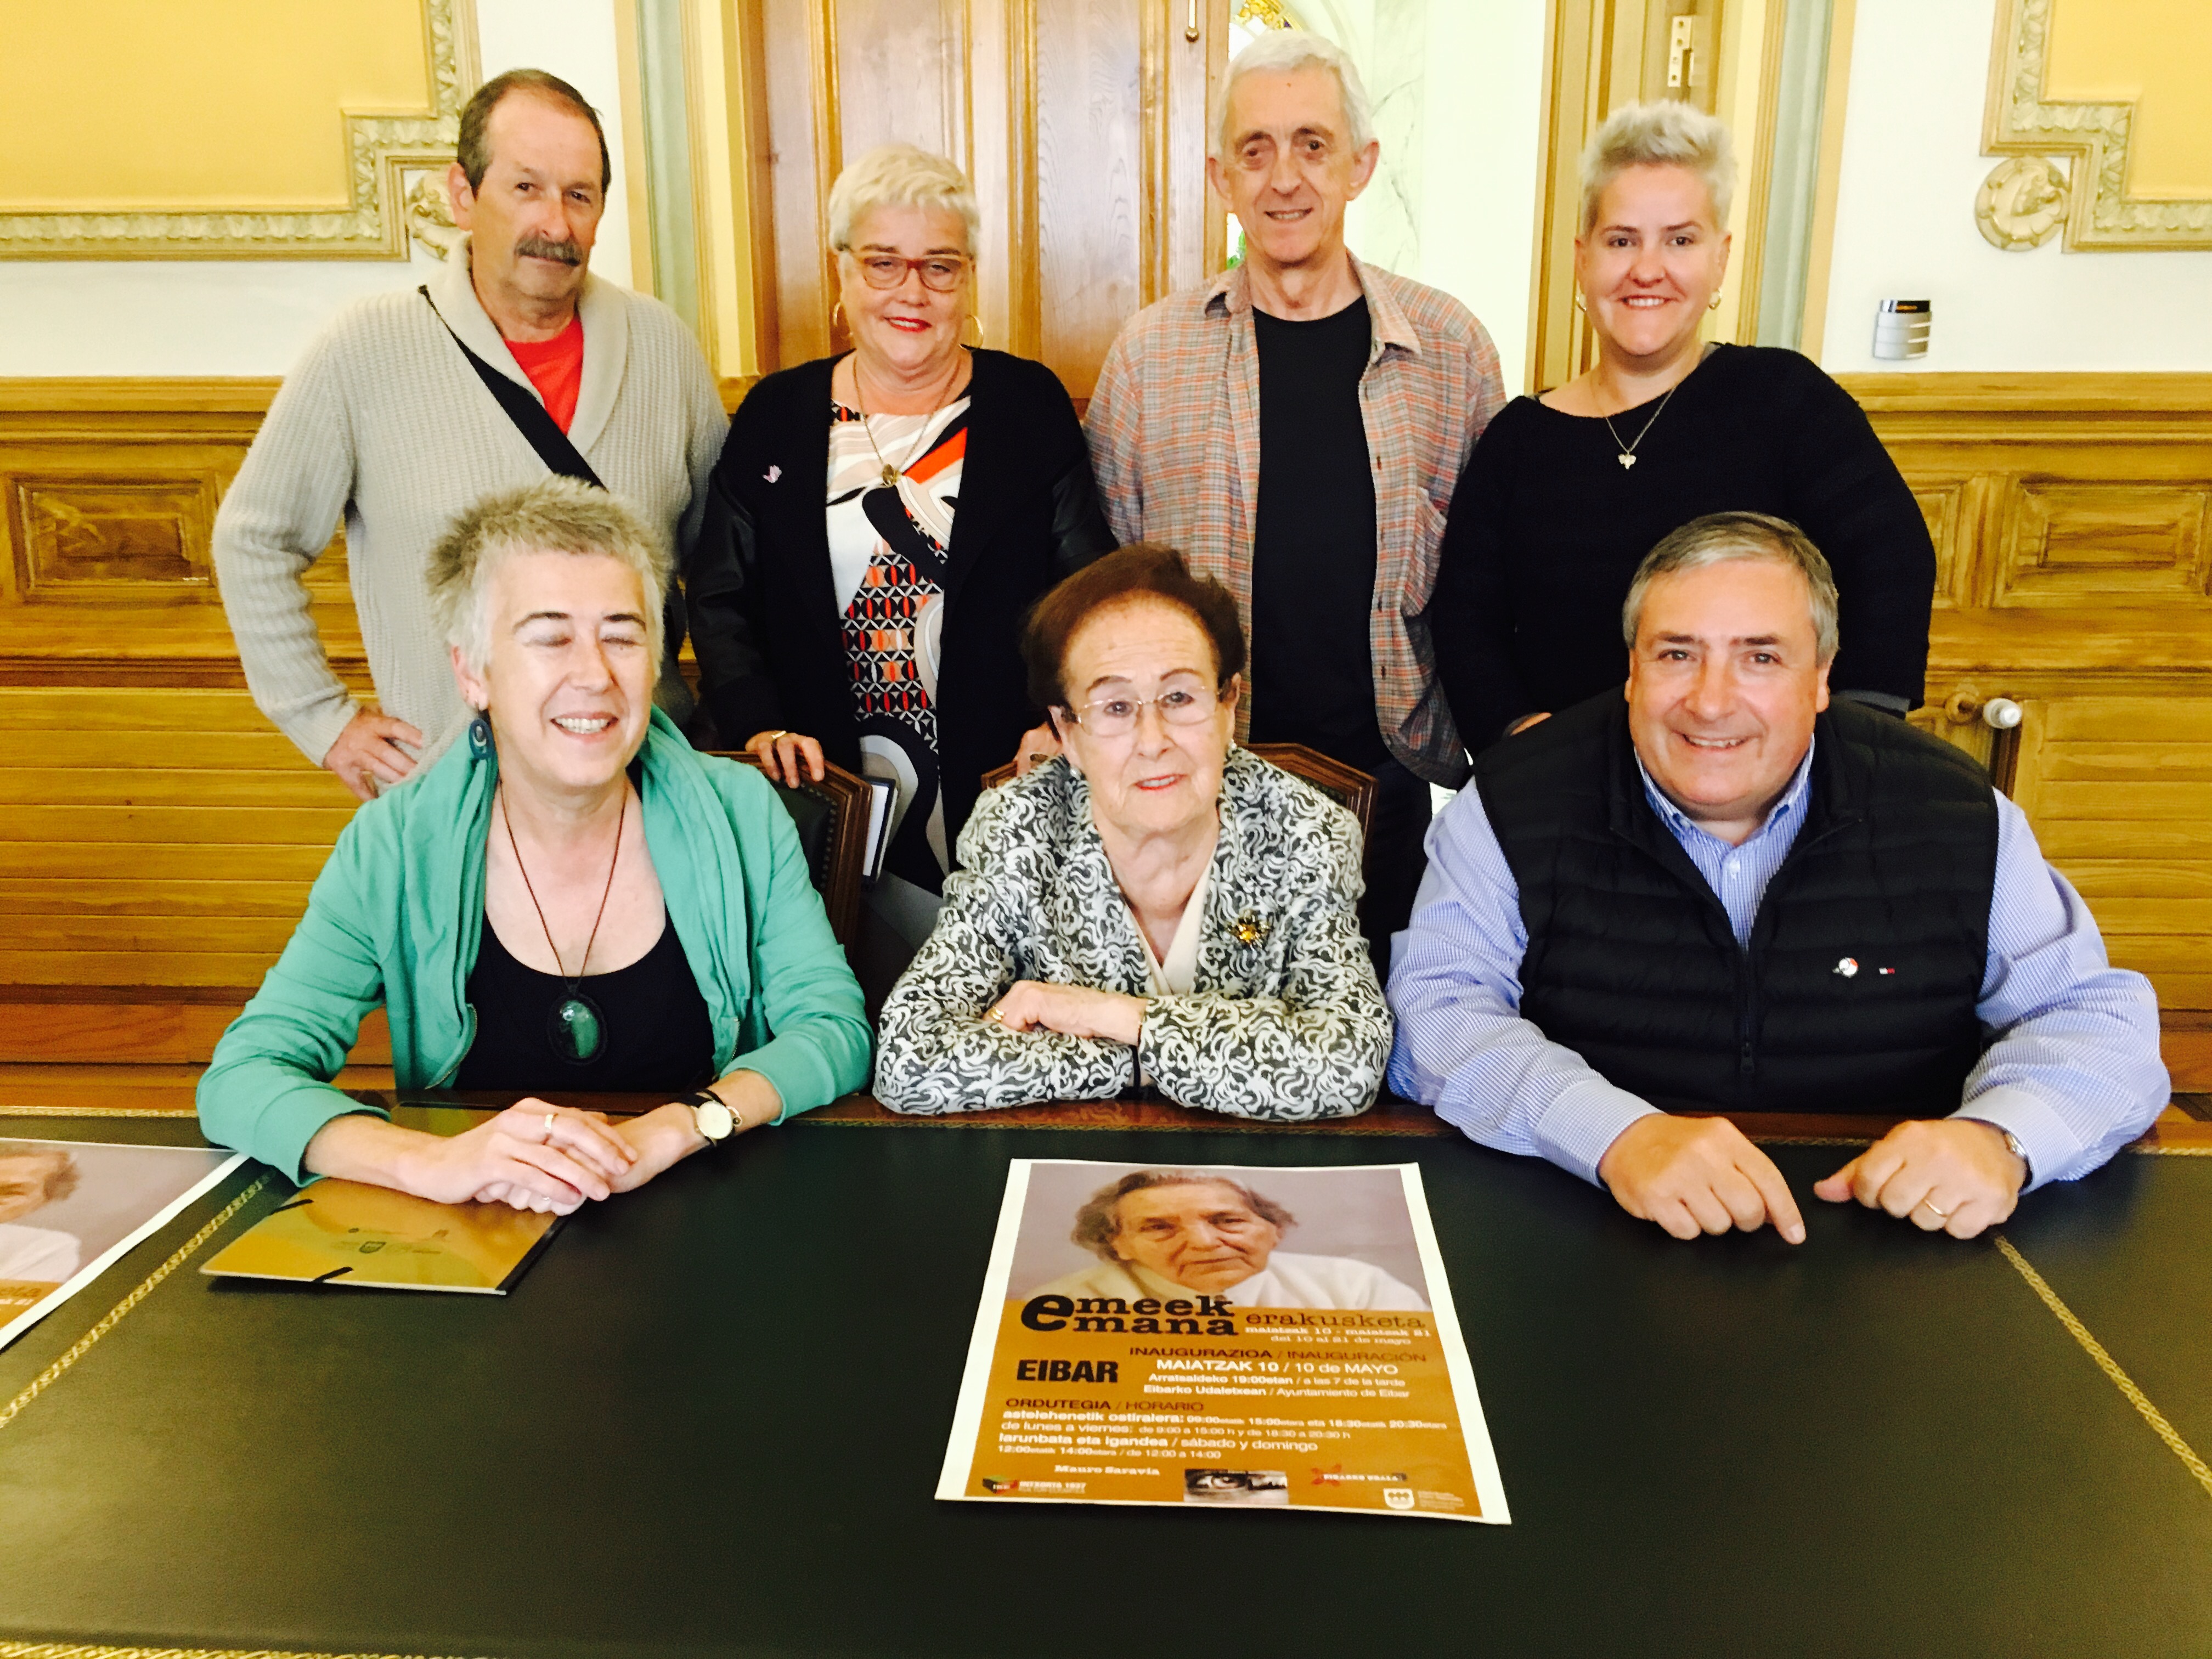 El Ayuntamiento de Eibar acogerá la muestra fotográfica "Emeek emana" del 10 al 21 de mayo